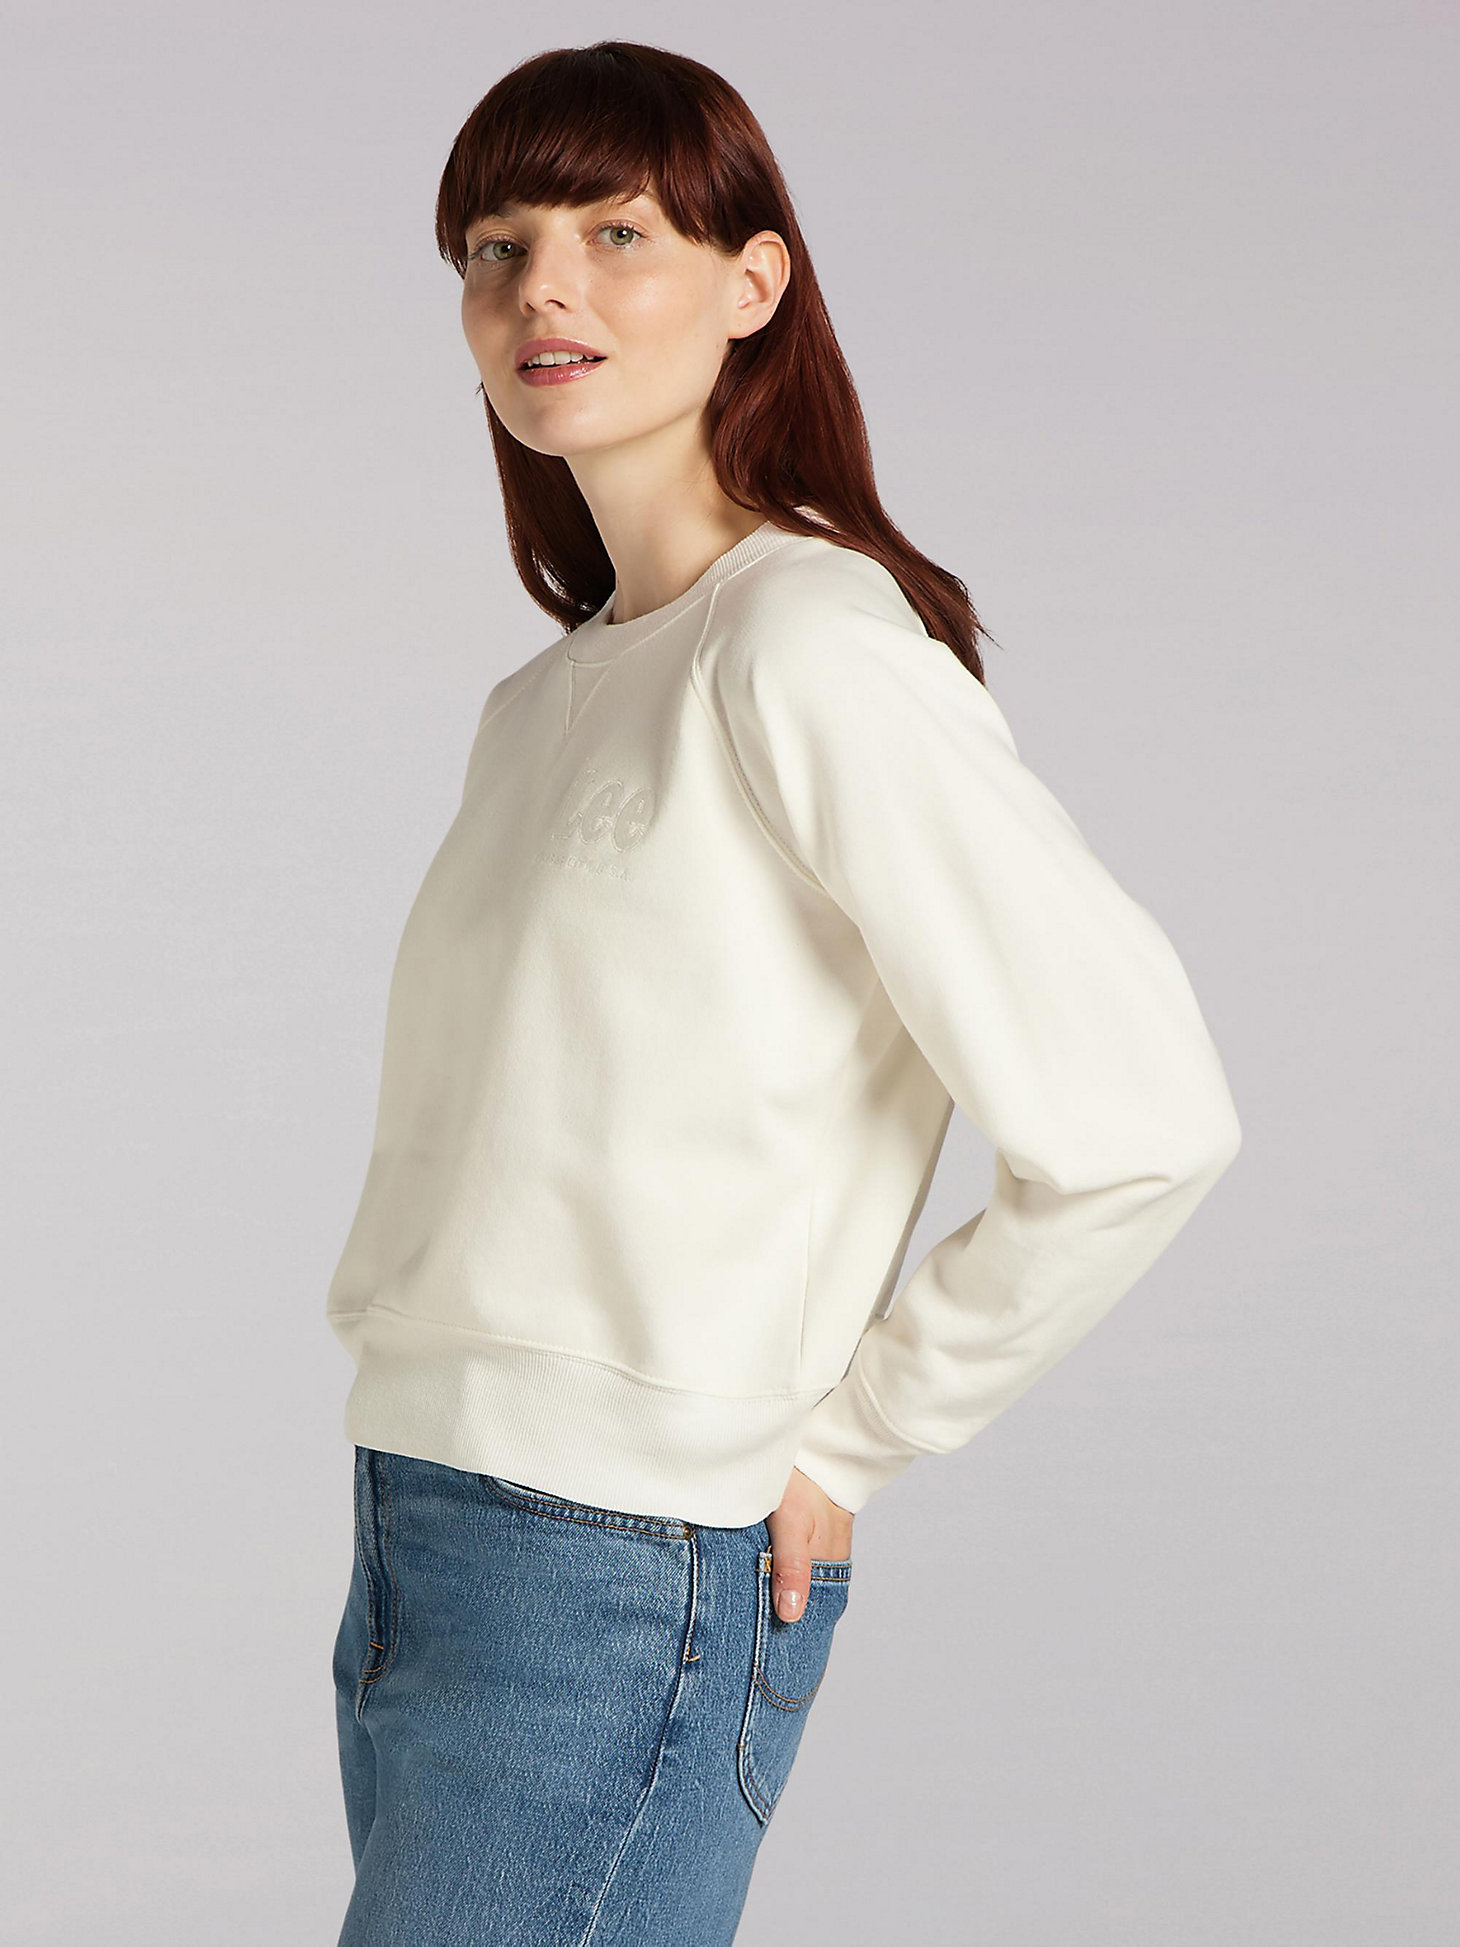 Women's Lee European Collection Crop Sweatshirt in White Canvas alternative view 2